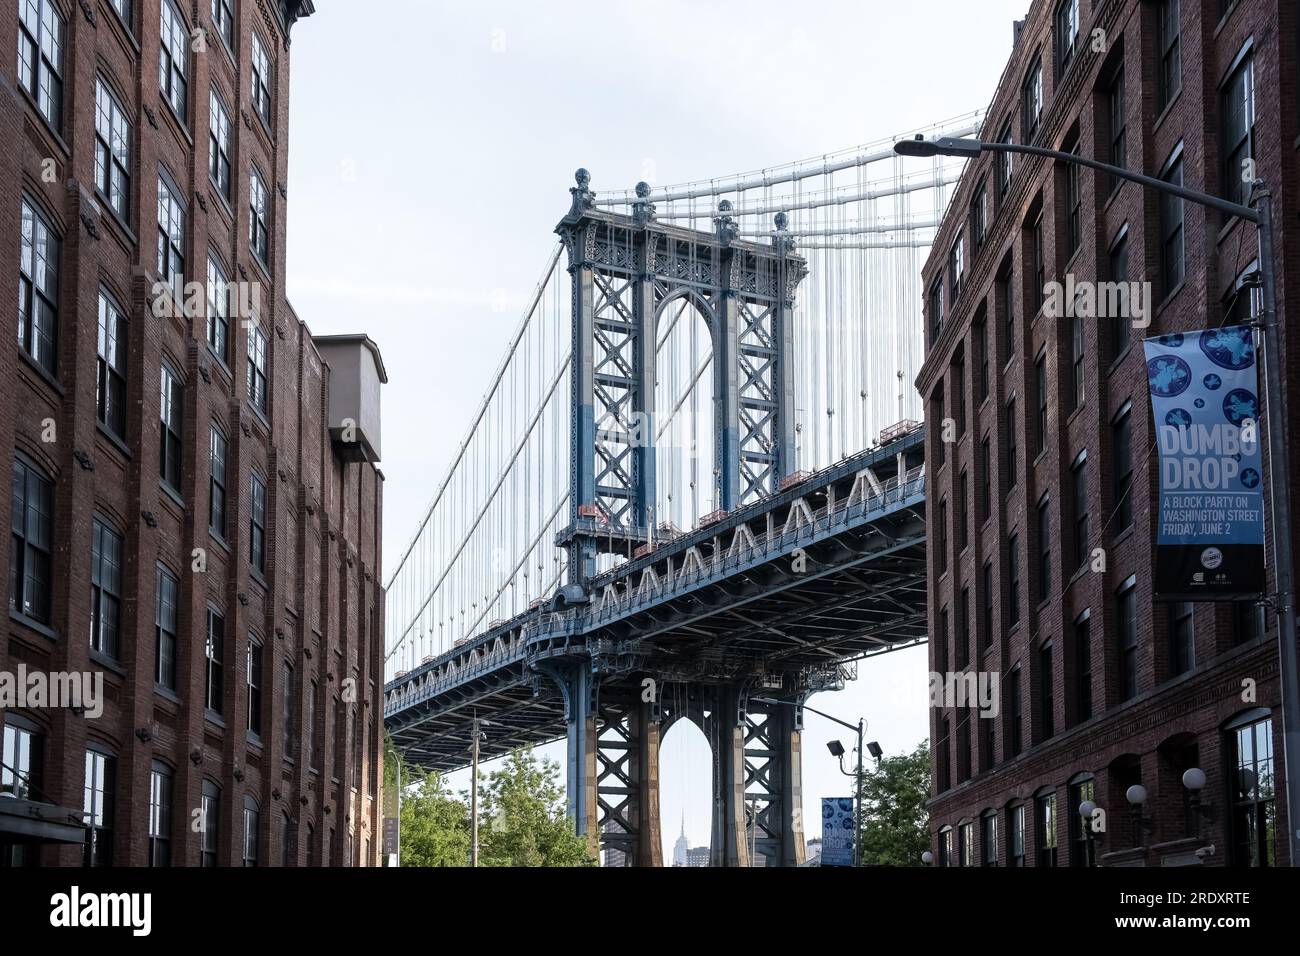 Architektonische Details von Dumbo, einem Viertel im New York City Bezirk Brooklyn mit der Manhattan Bridge im Hintergrund. Stockfoto